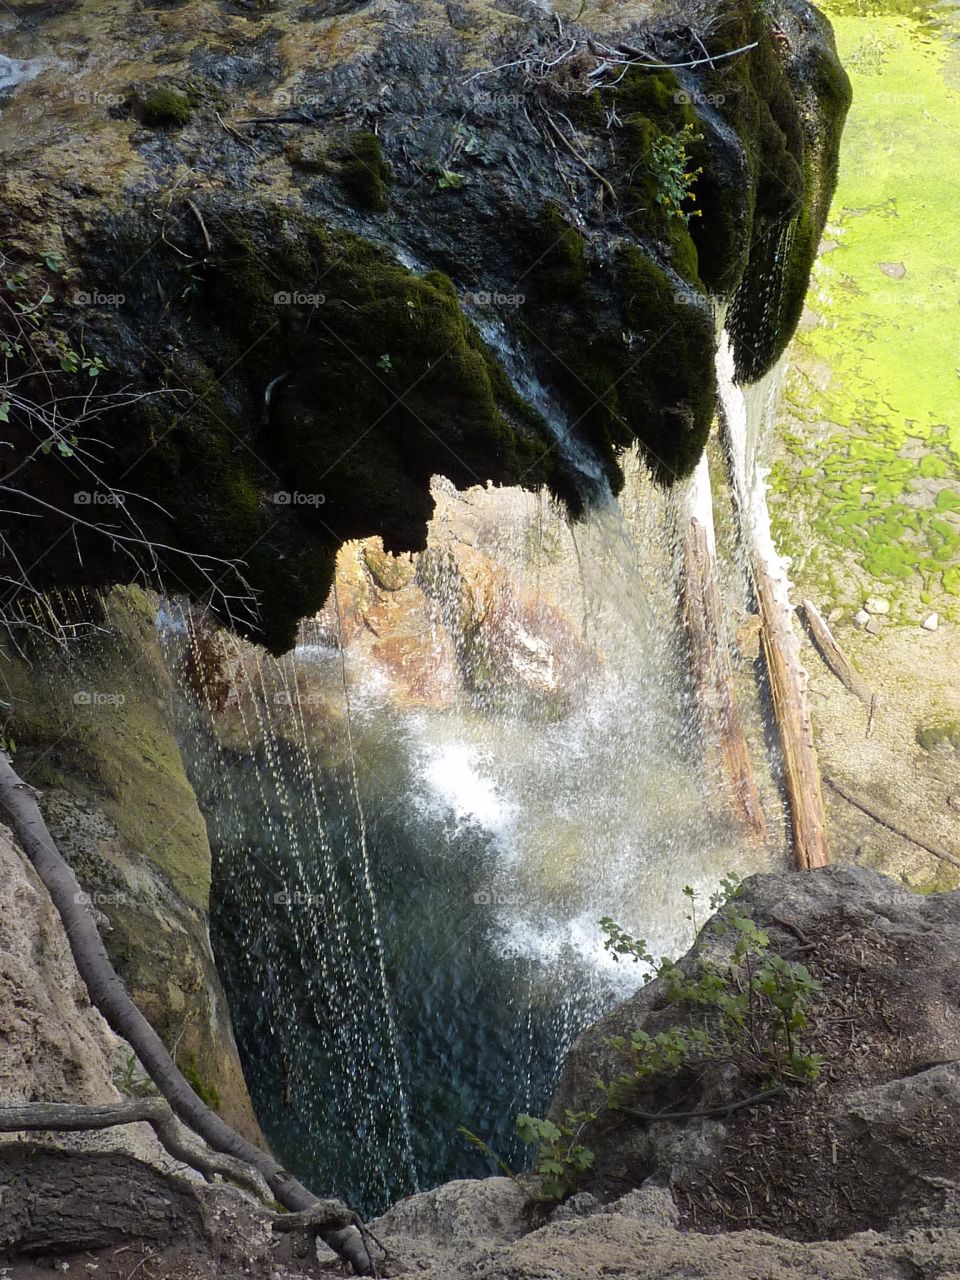 water slowly falling from mossy rocks